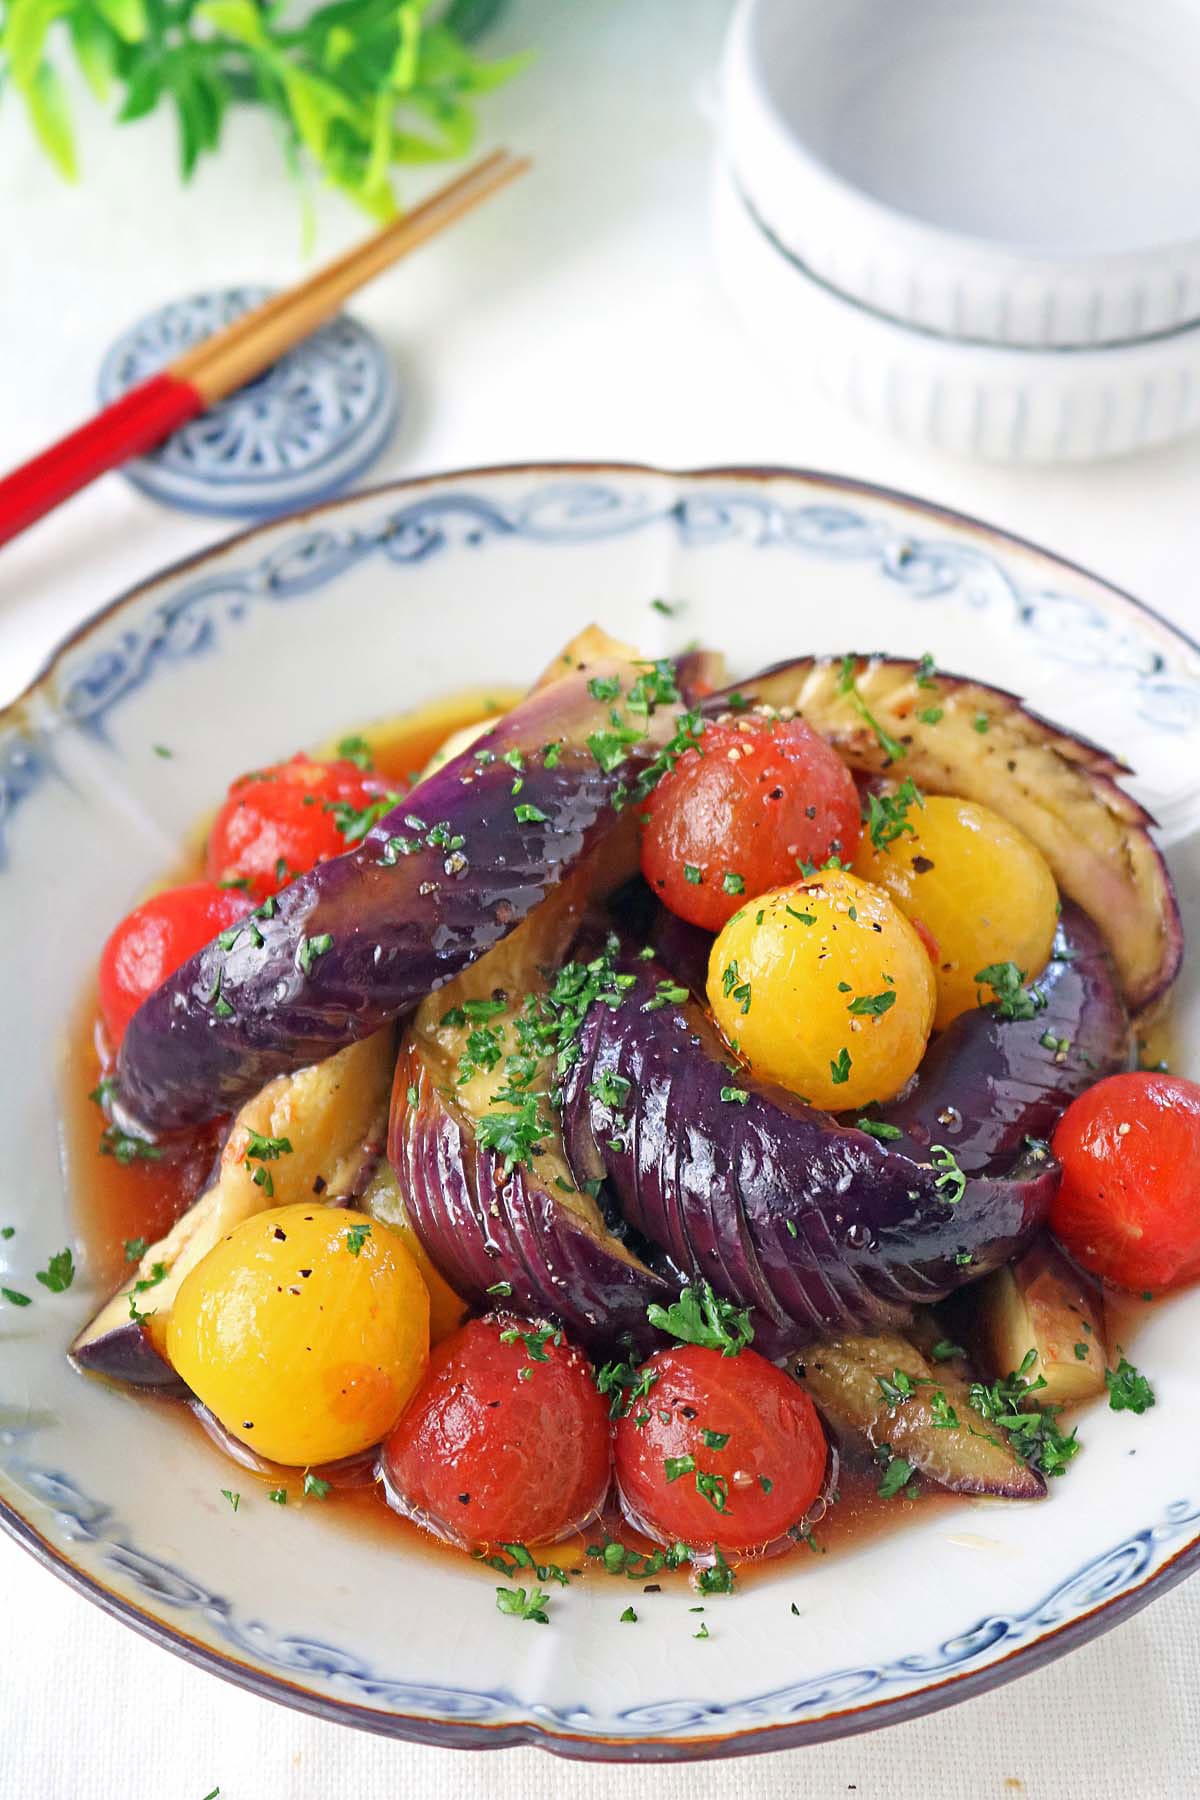 作り置きにも。簡単なのにおいしい『トマト』の副菜レシピ4品